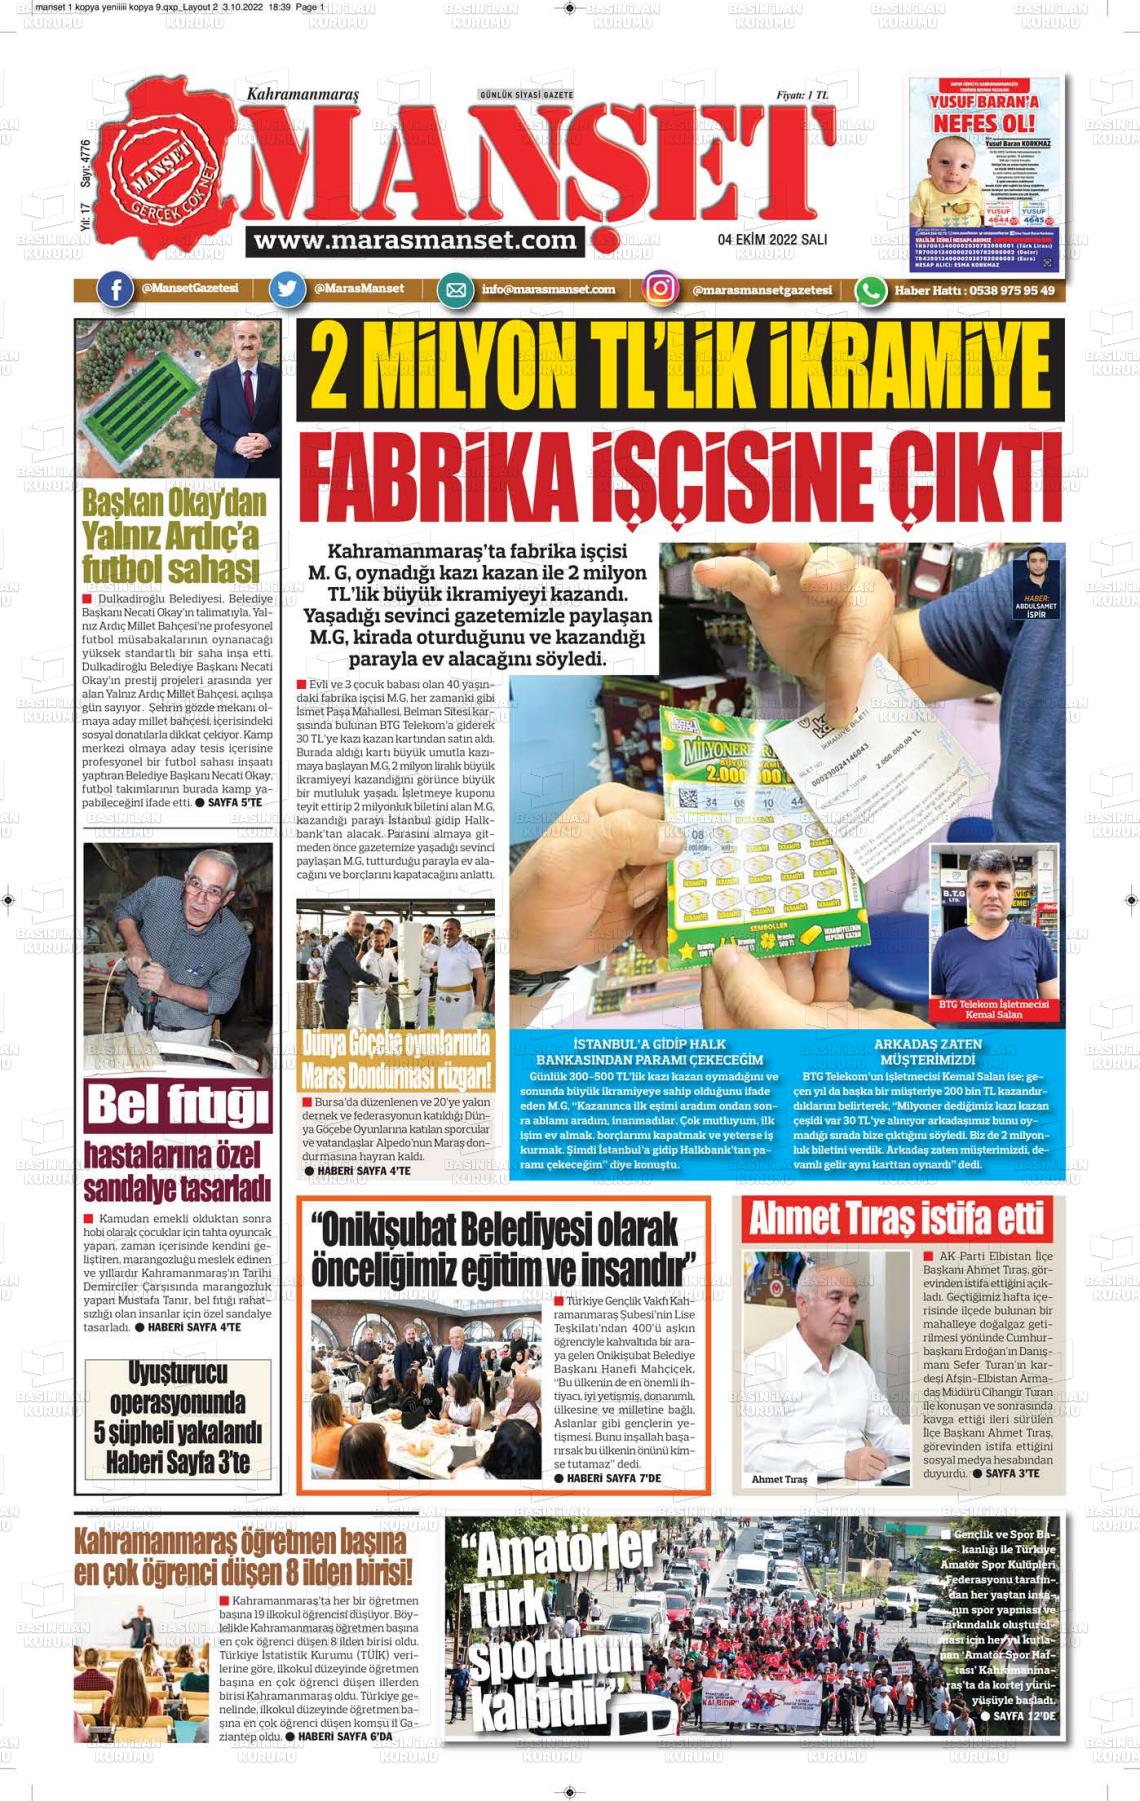 04 Ekim 2022 Manşet Gazete Manşeti